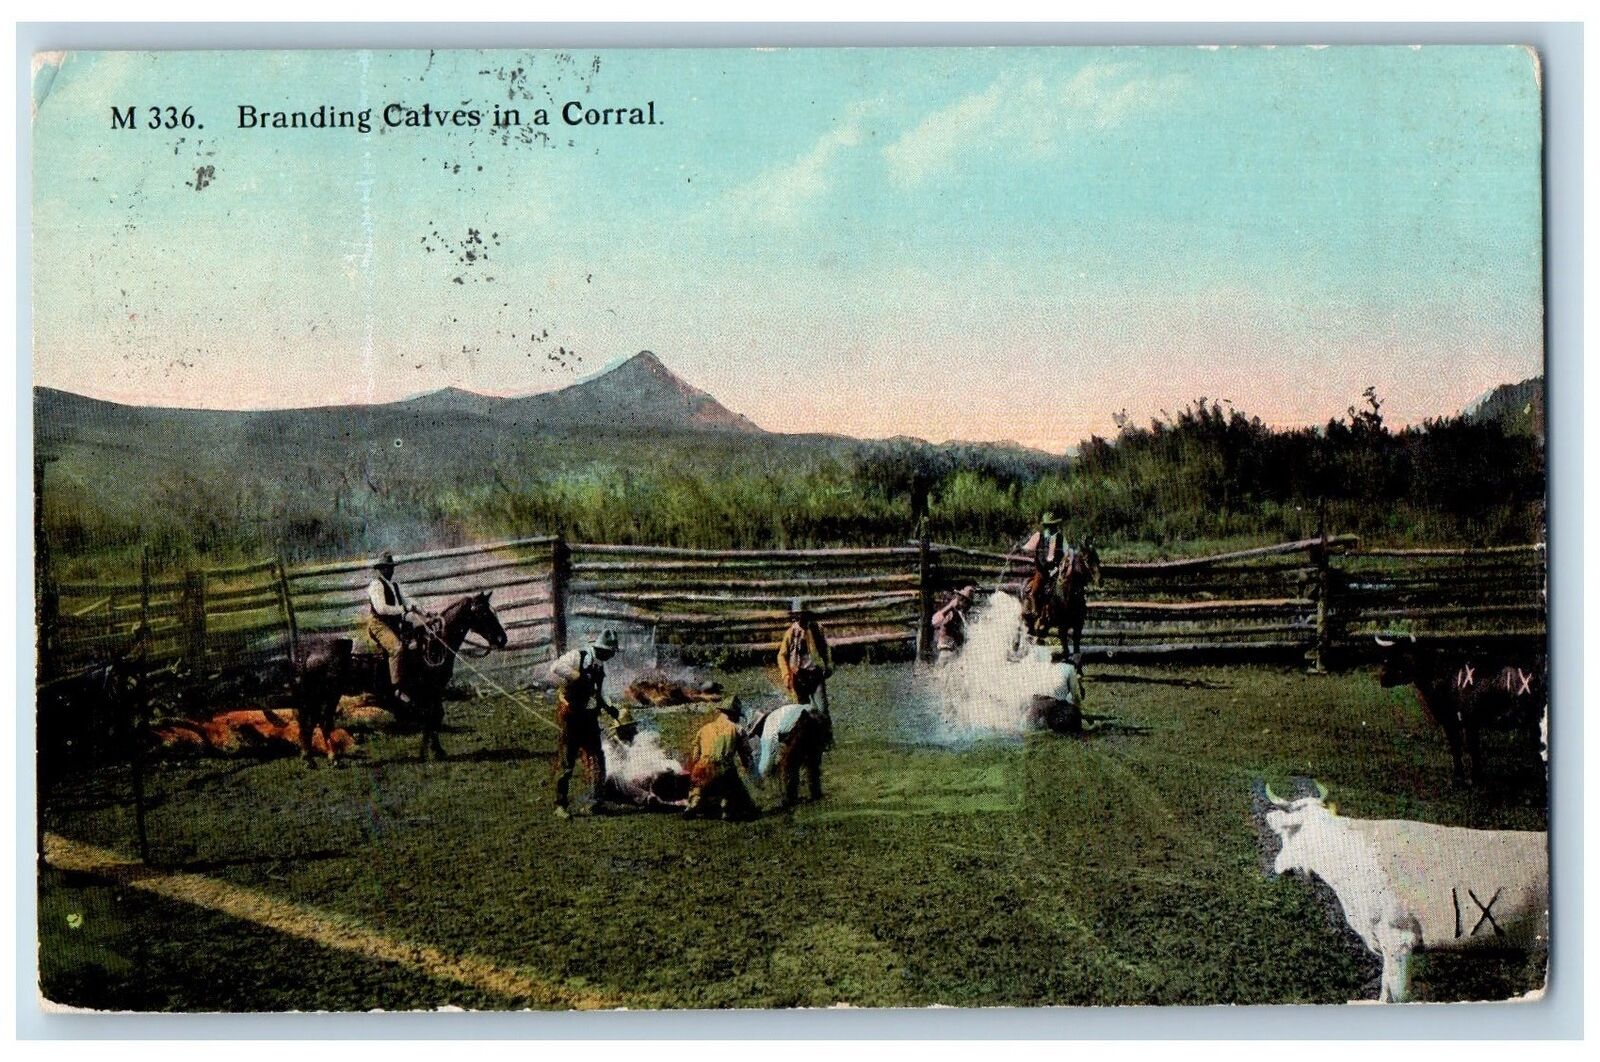 Malta Montana MT Postcard Branding Calves In A Corral Horse Scene 1914 Antique